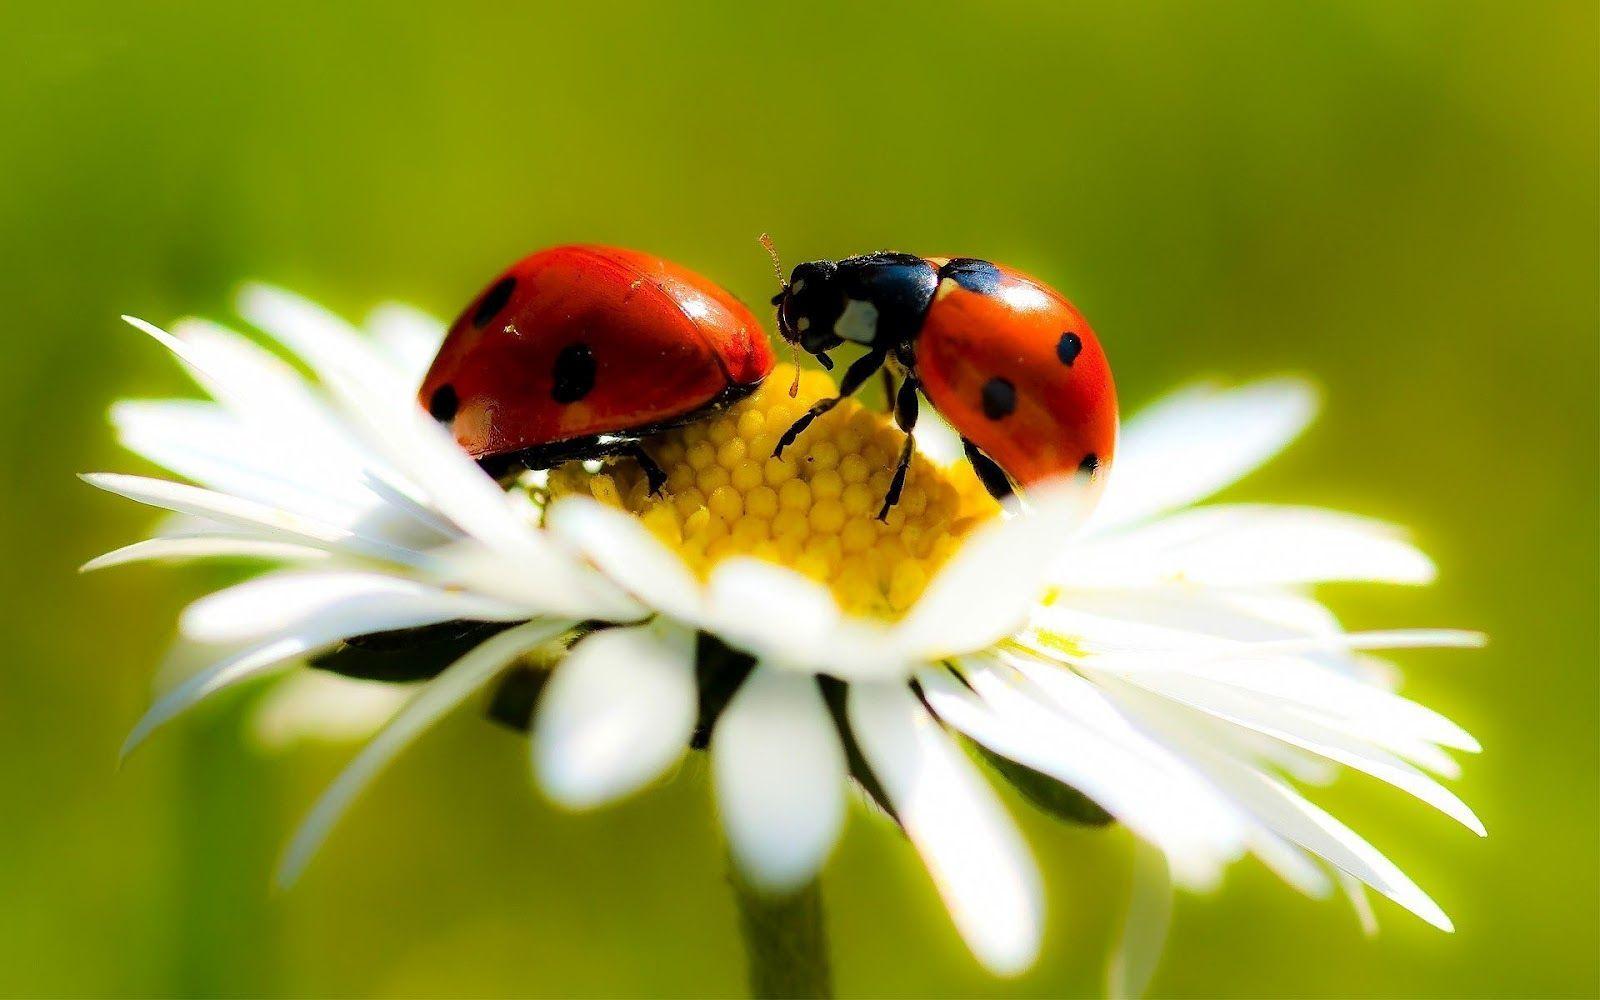 image Of Ladybugs. Hd Ladybug Wallpaper With Two Ladybugs On A